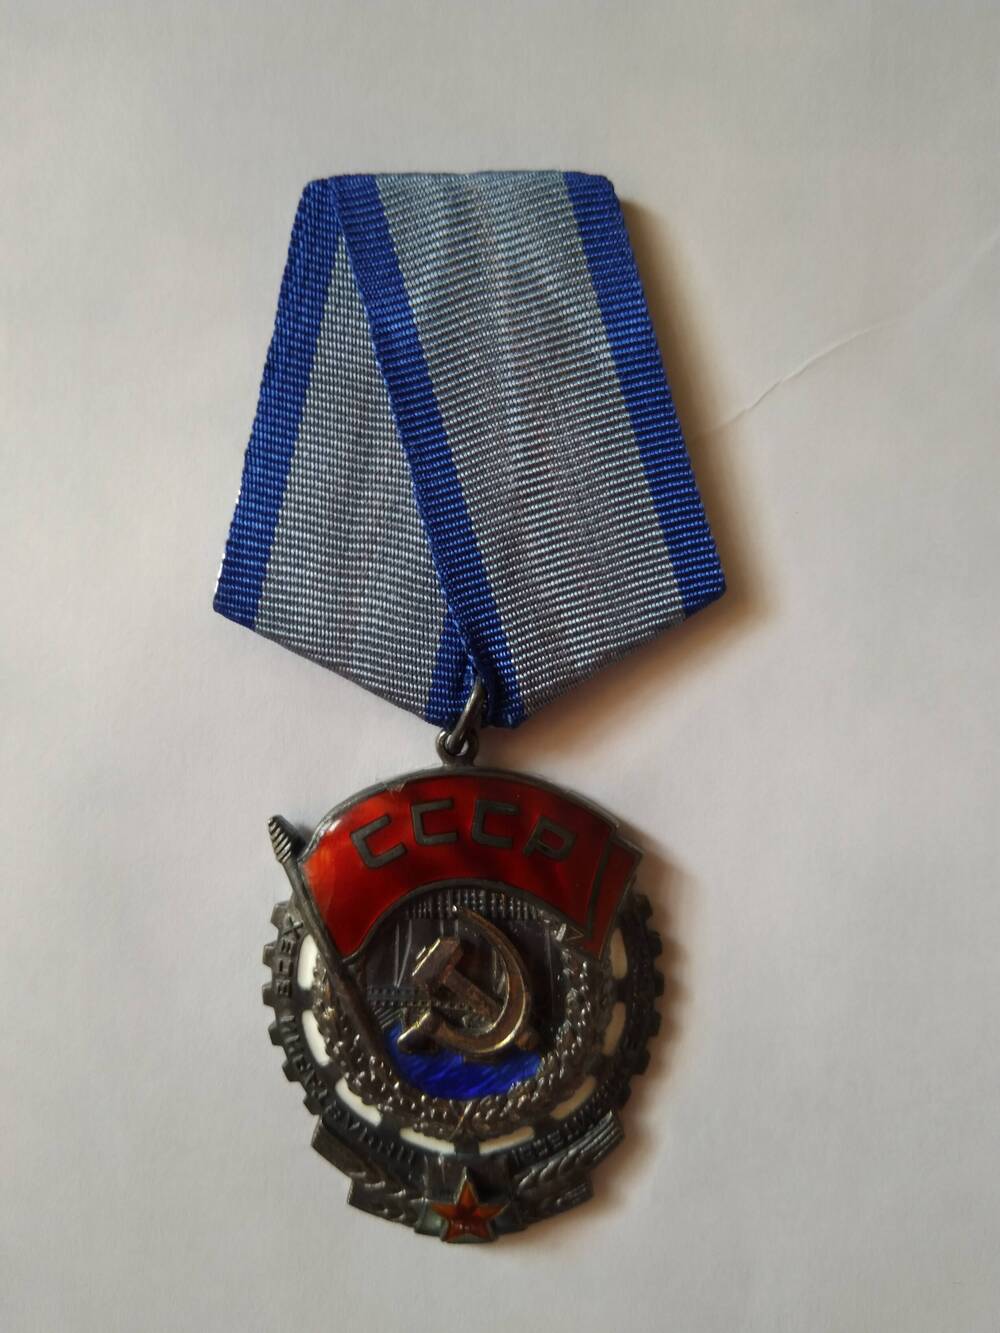 Орден Трудового Красного Знамени - общегражданская награда СССР , вручавшаяся за трудовые заслуги перед Советским государством и обществом